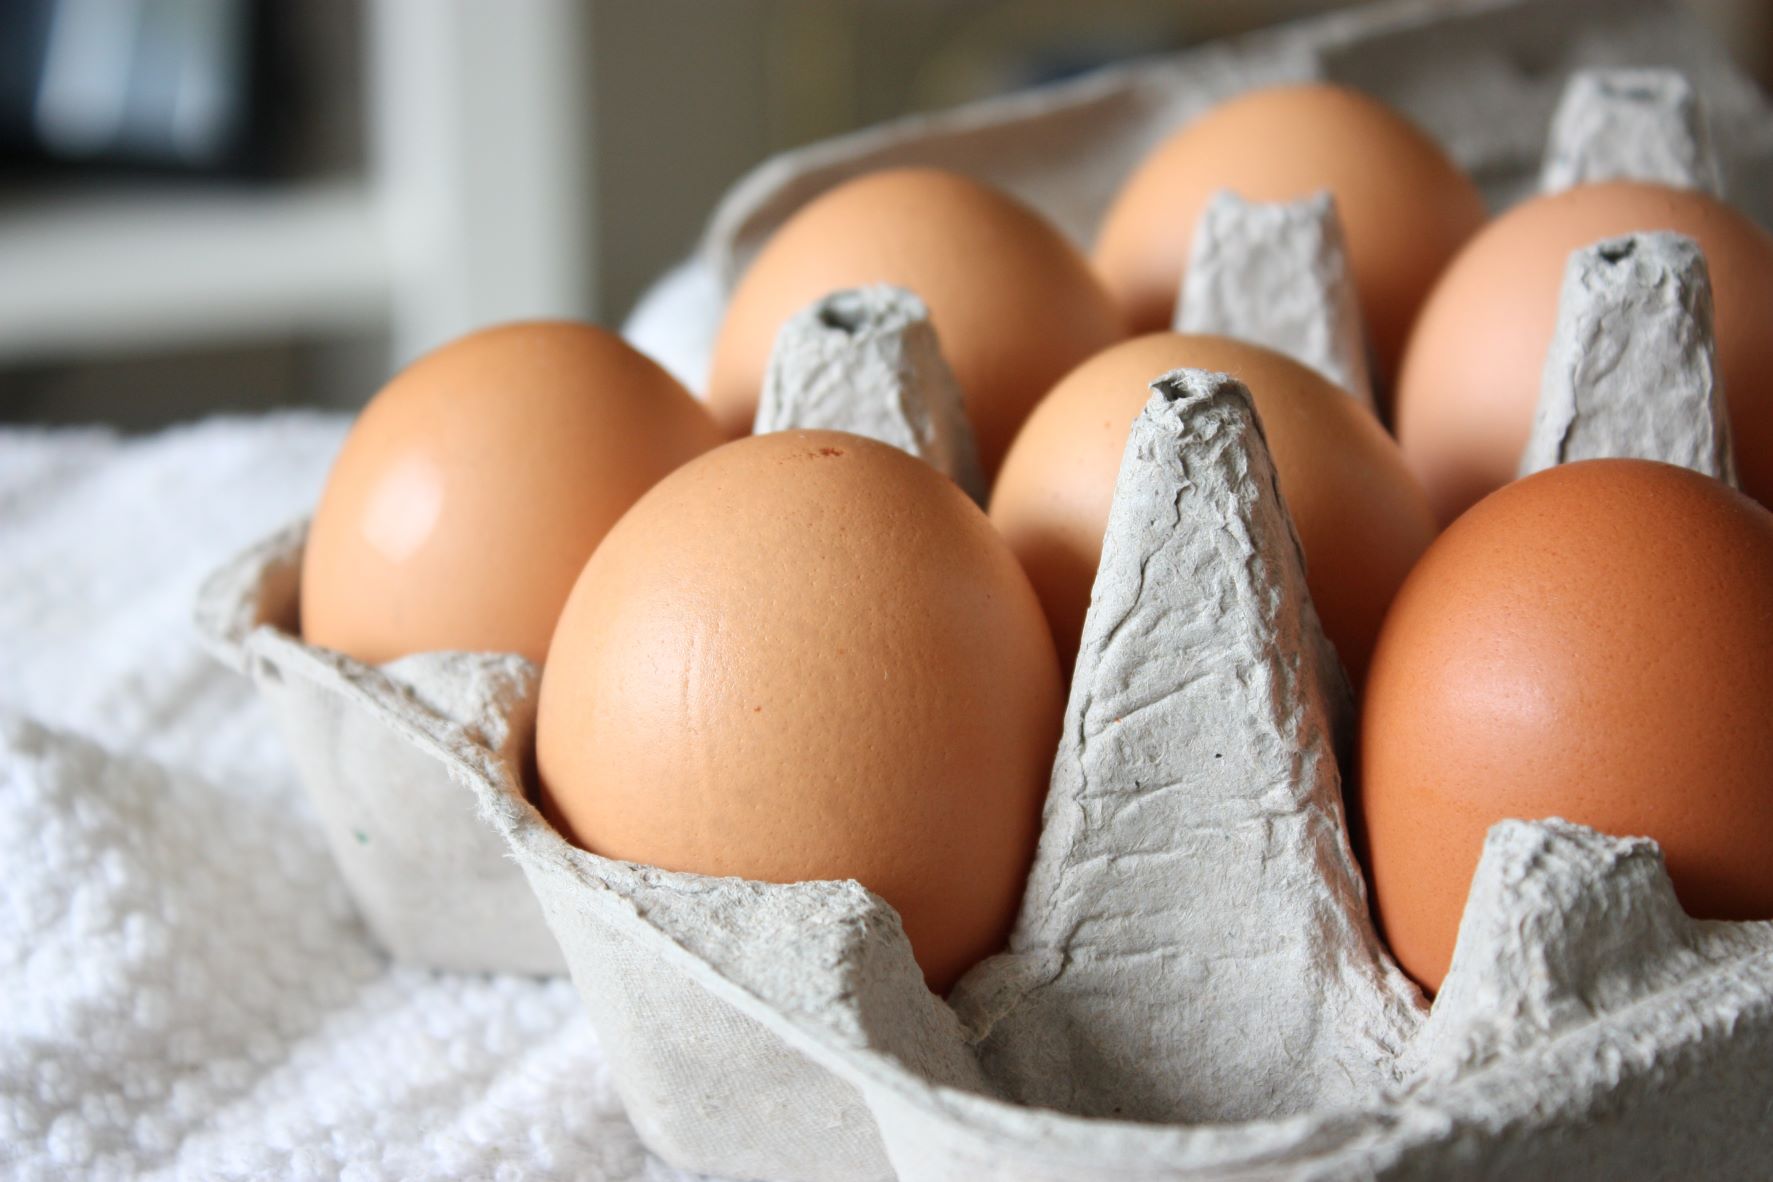 Consommation : Les ventes d’œufs en hausse